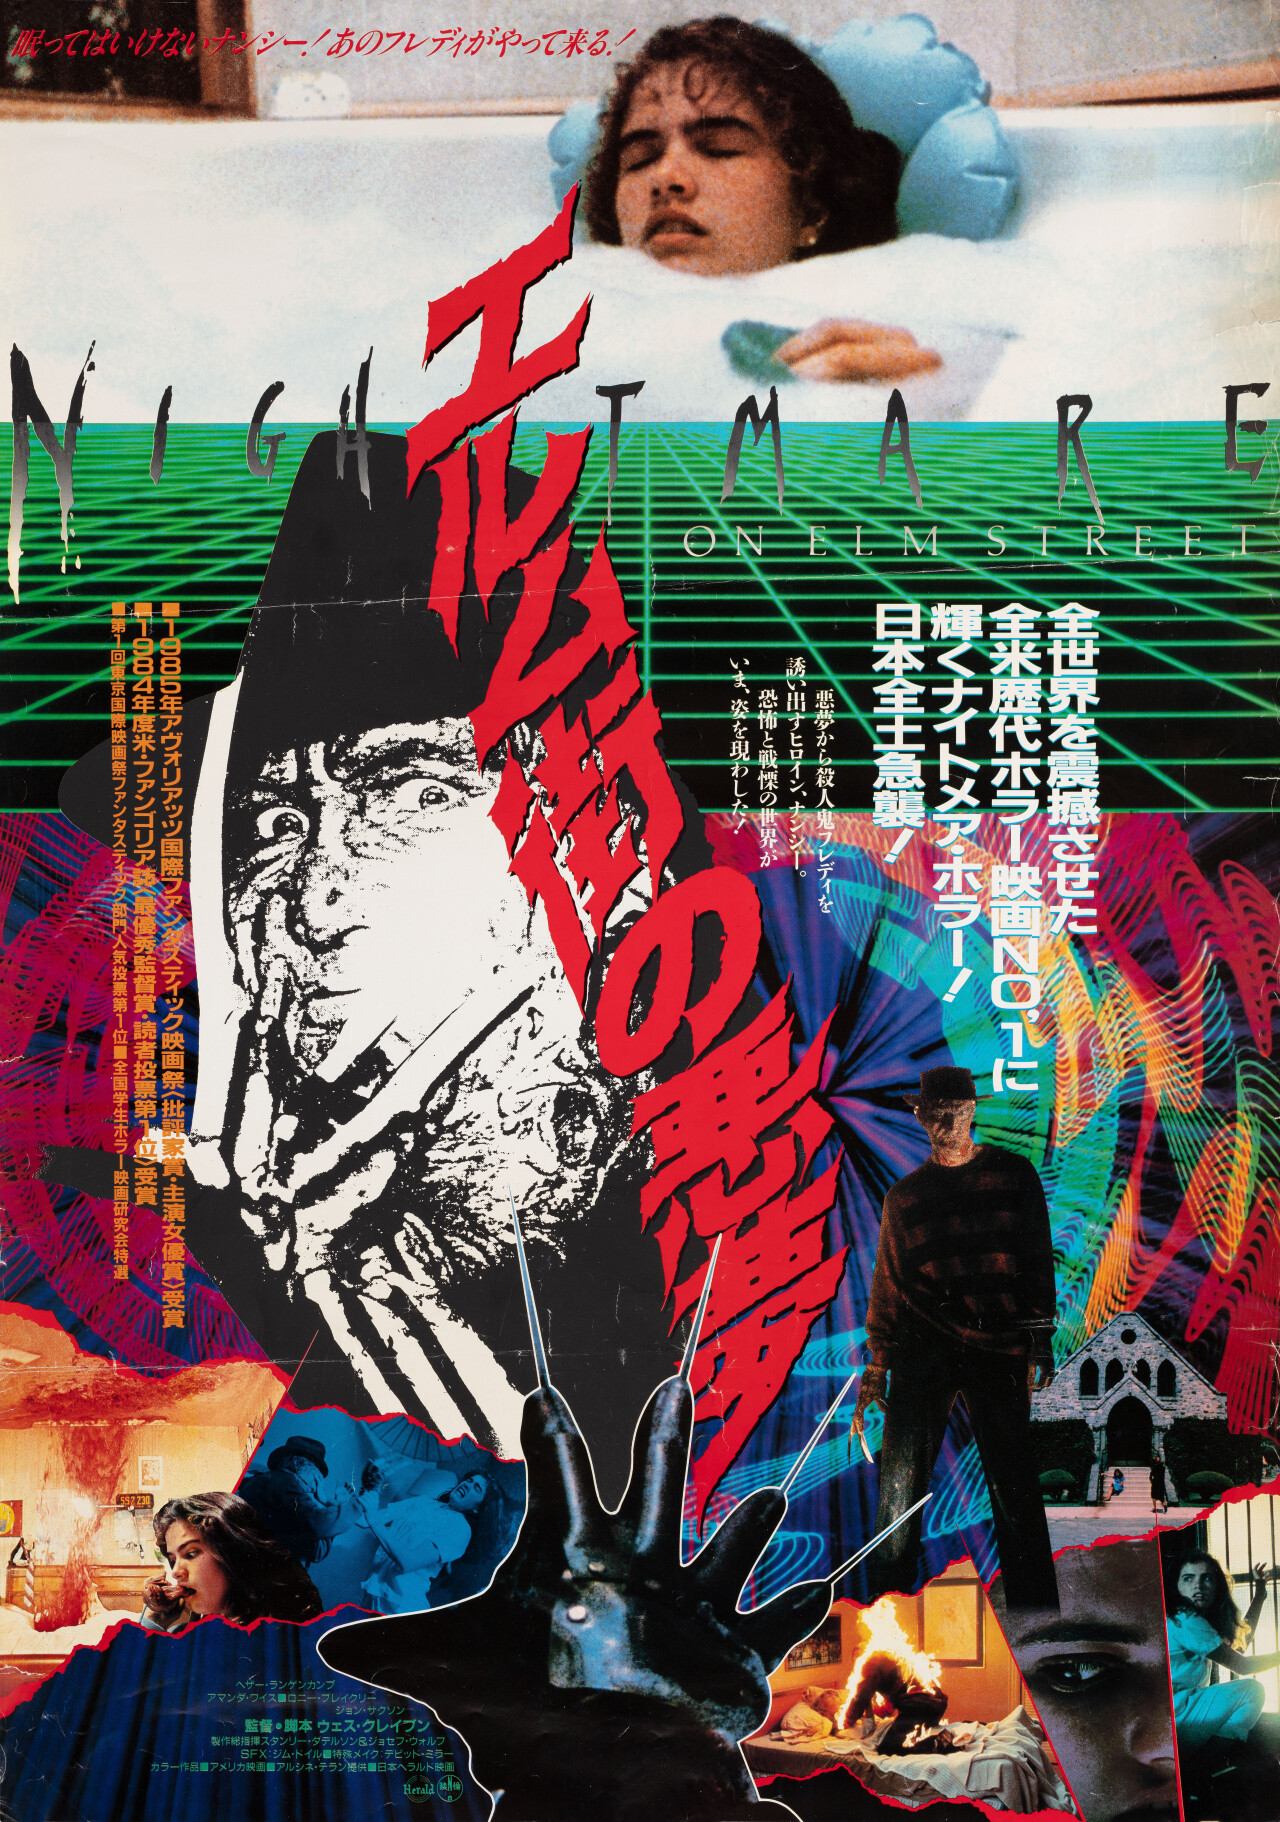 Кошмар на улице Вязов (A Nightmare on Elm Street, 1984), режиссёр Уэс Крэйвен, японский постер к фильму (ужасы, 1986 год)